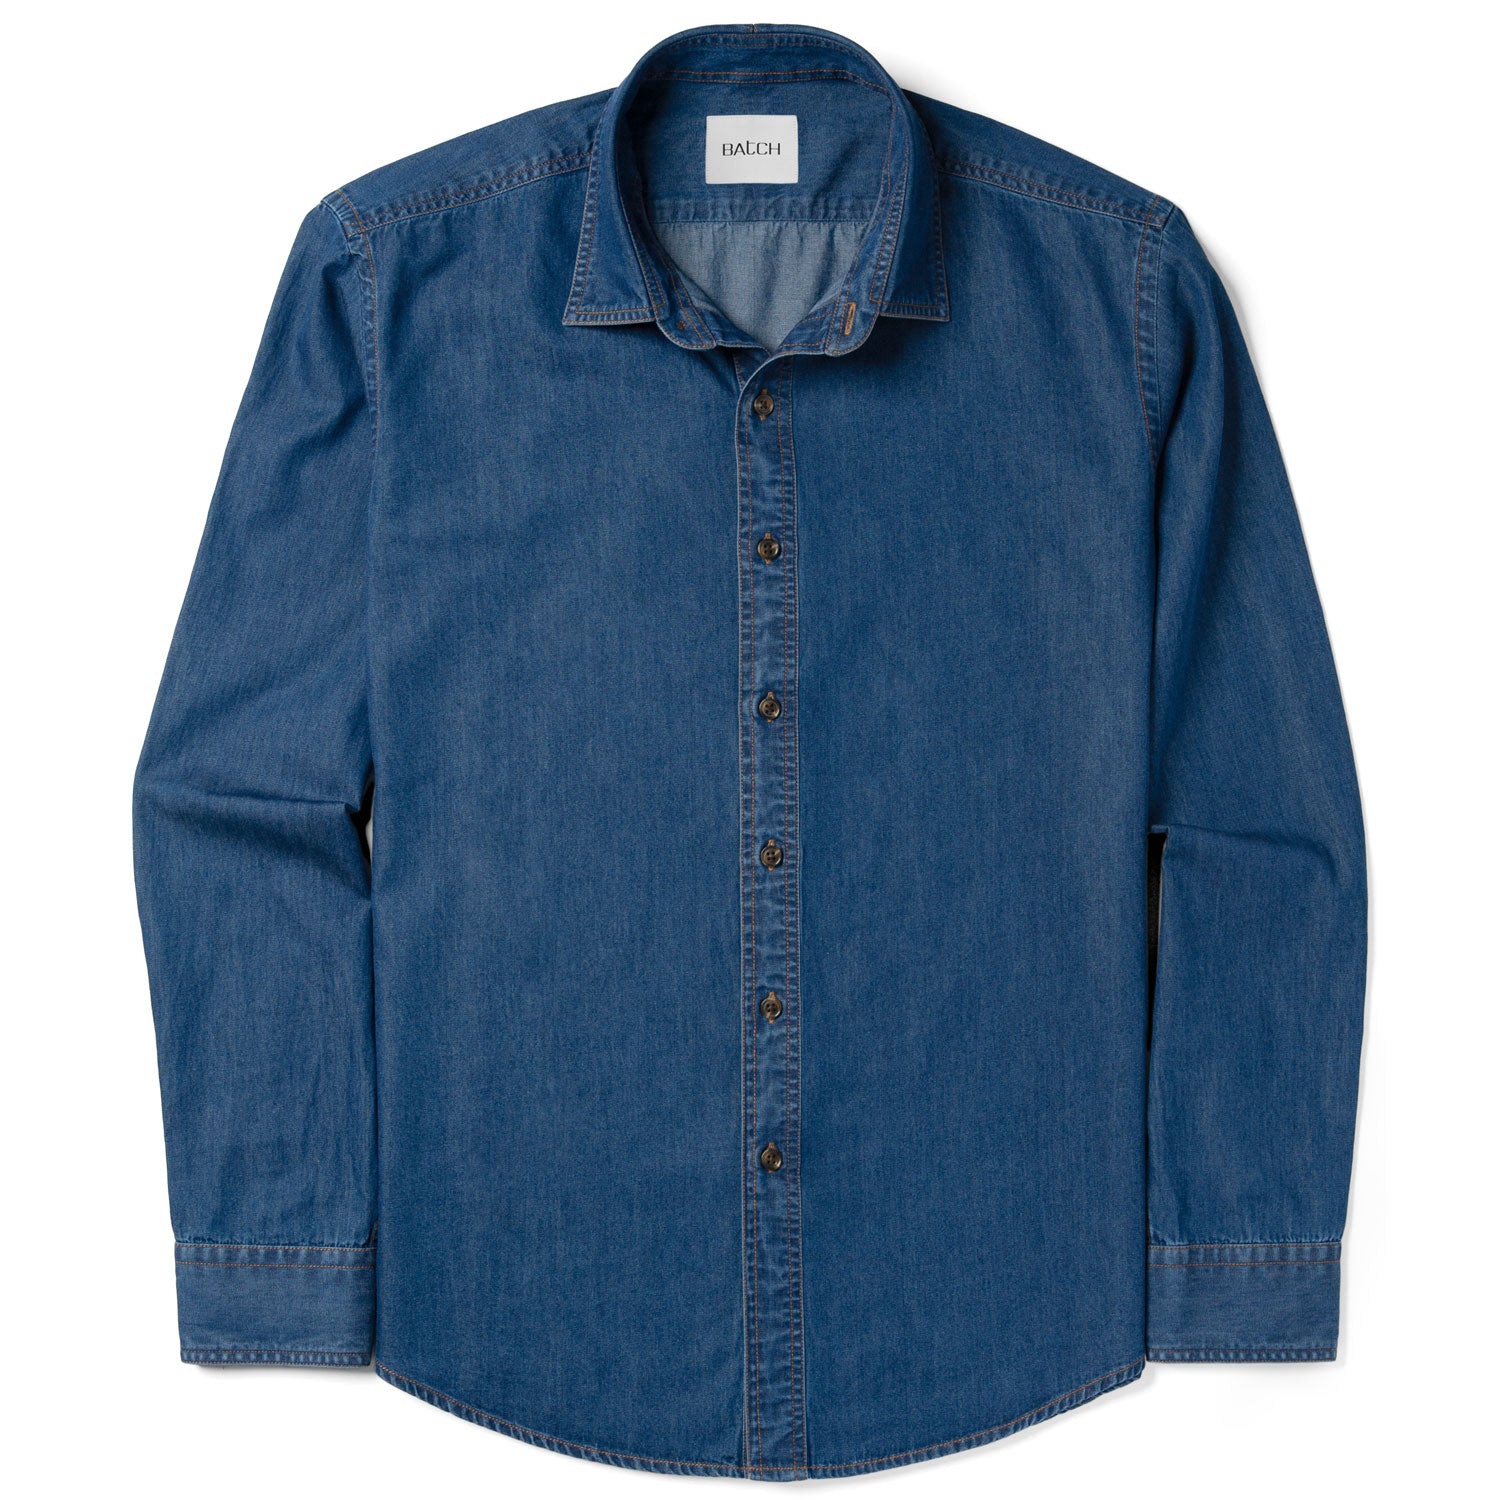 Essential Spread Collar Casual Shirt - Medium Blue Cotton Denim